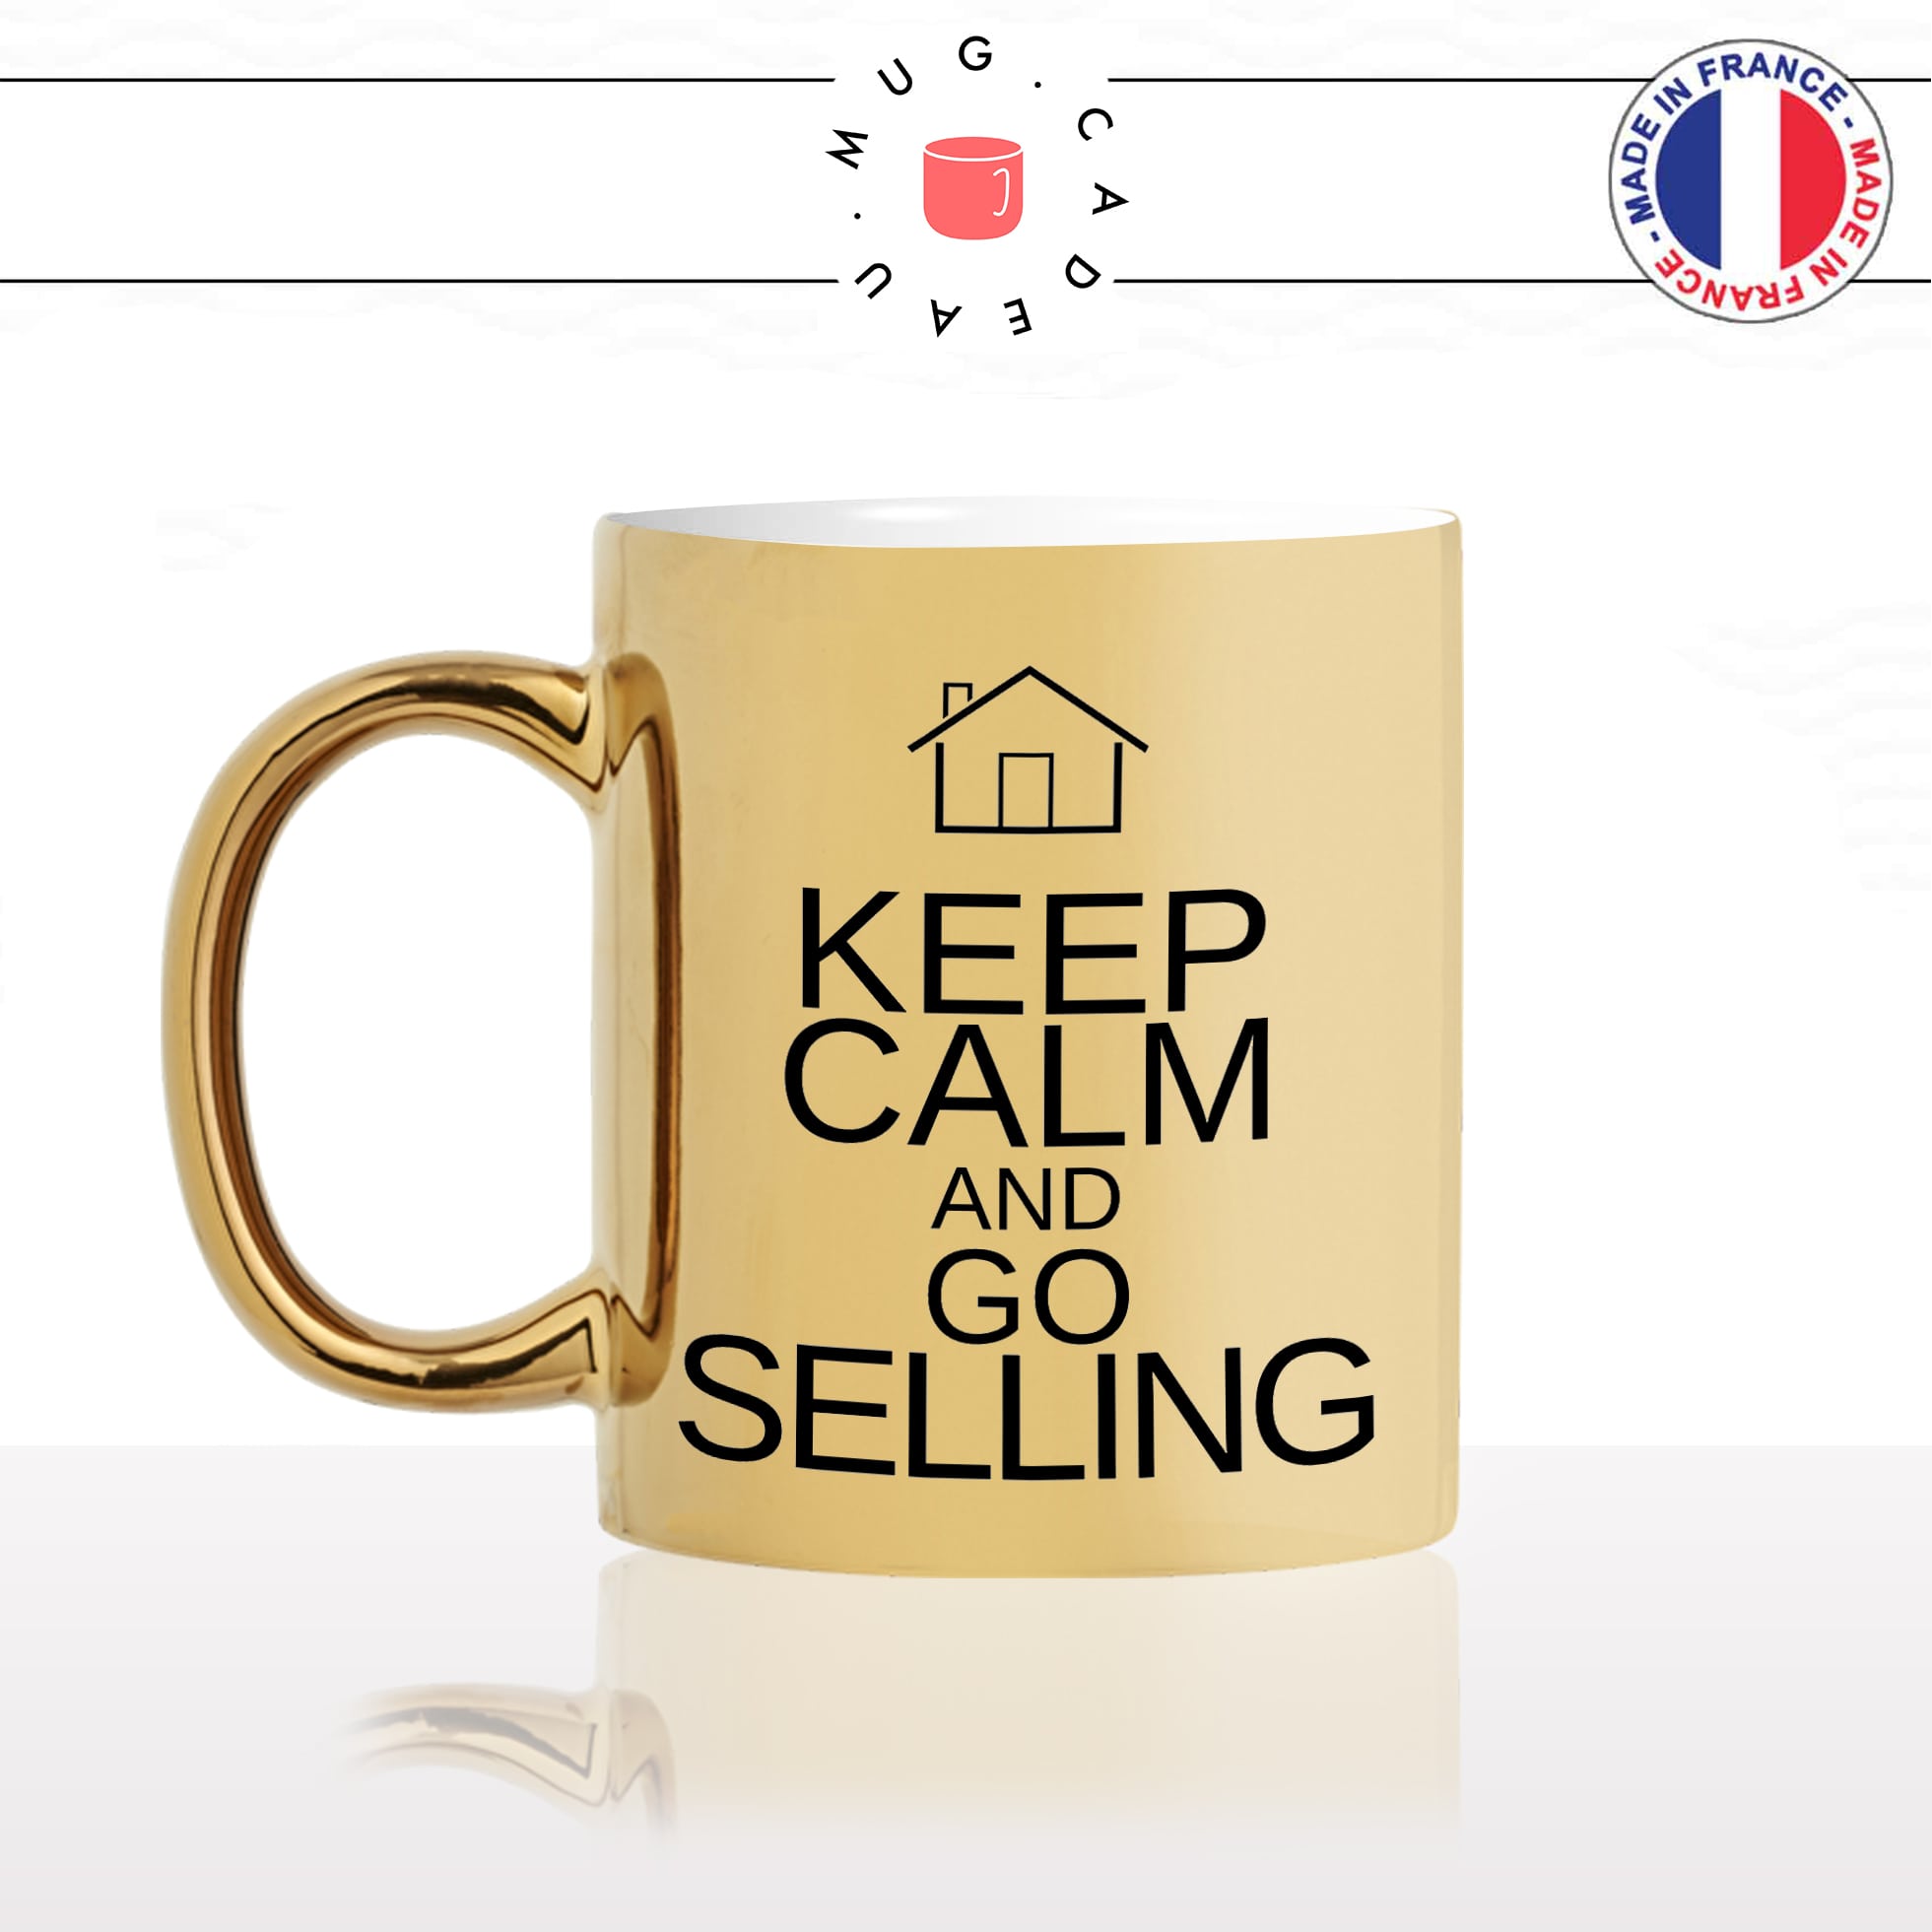 mug-tasse-gold-or-doré-keep-calm-and-go-selling-agent-immobilier-agence-vente-vendeur-metier-humour-idée-cadeau-fun-café-thé-personnalisé-min